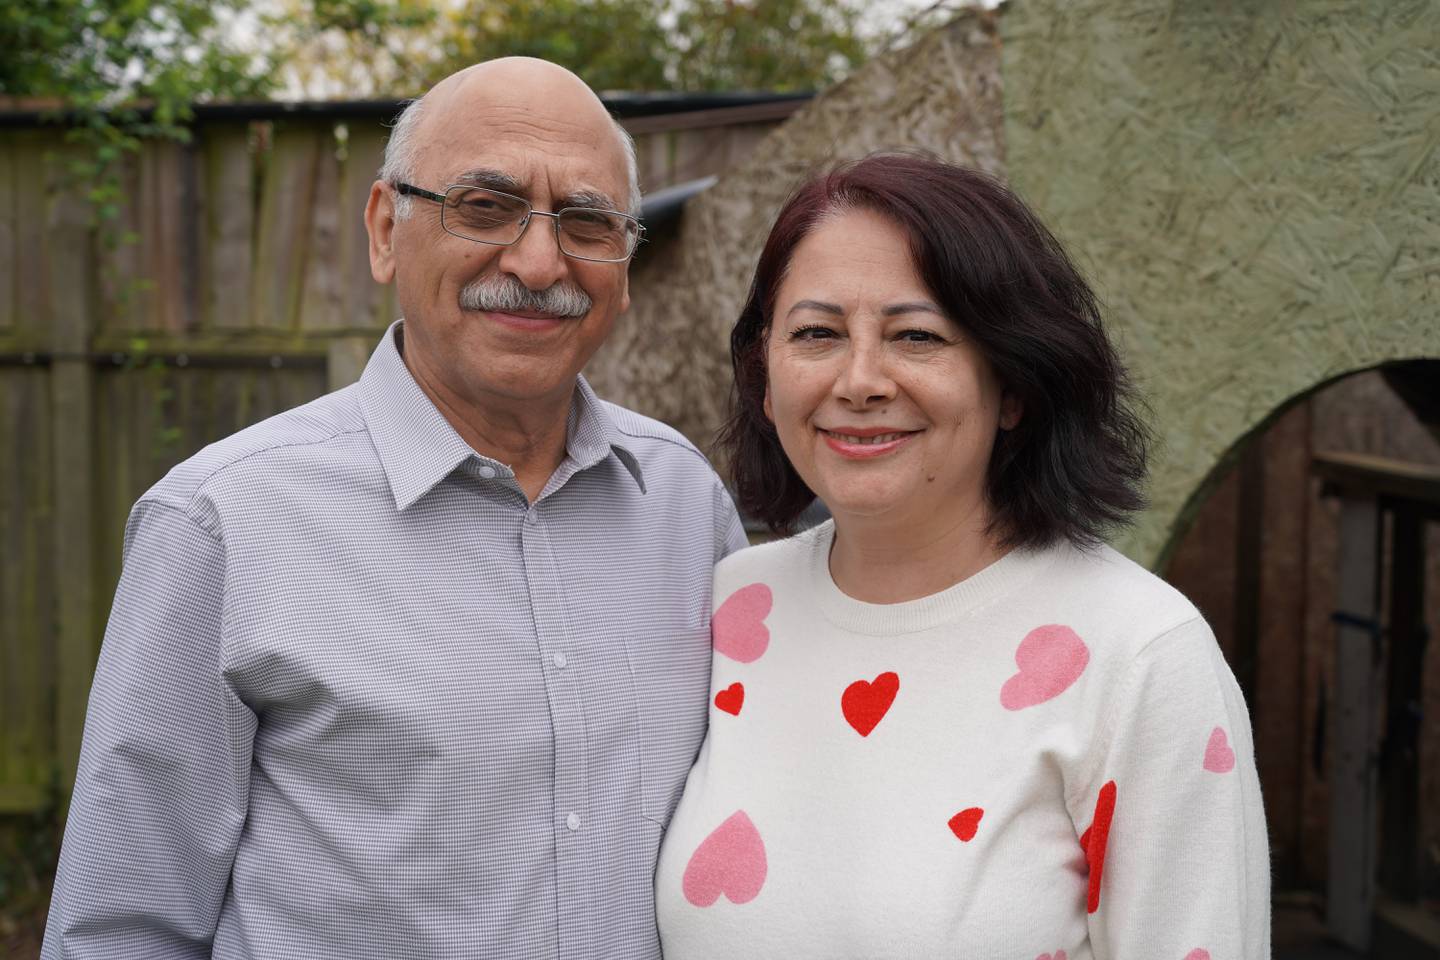 Anoosheh Ashoori with his wife Sherry. Victoria Pertusa / The National